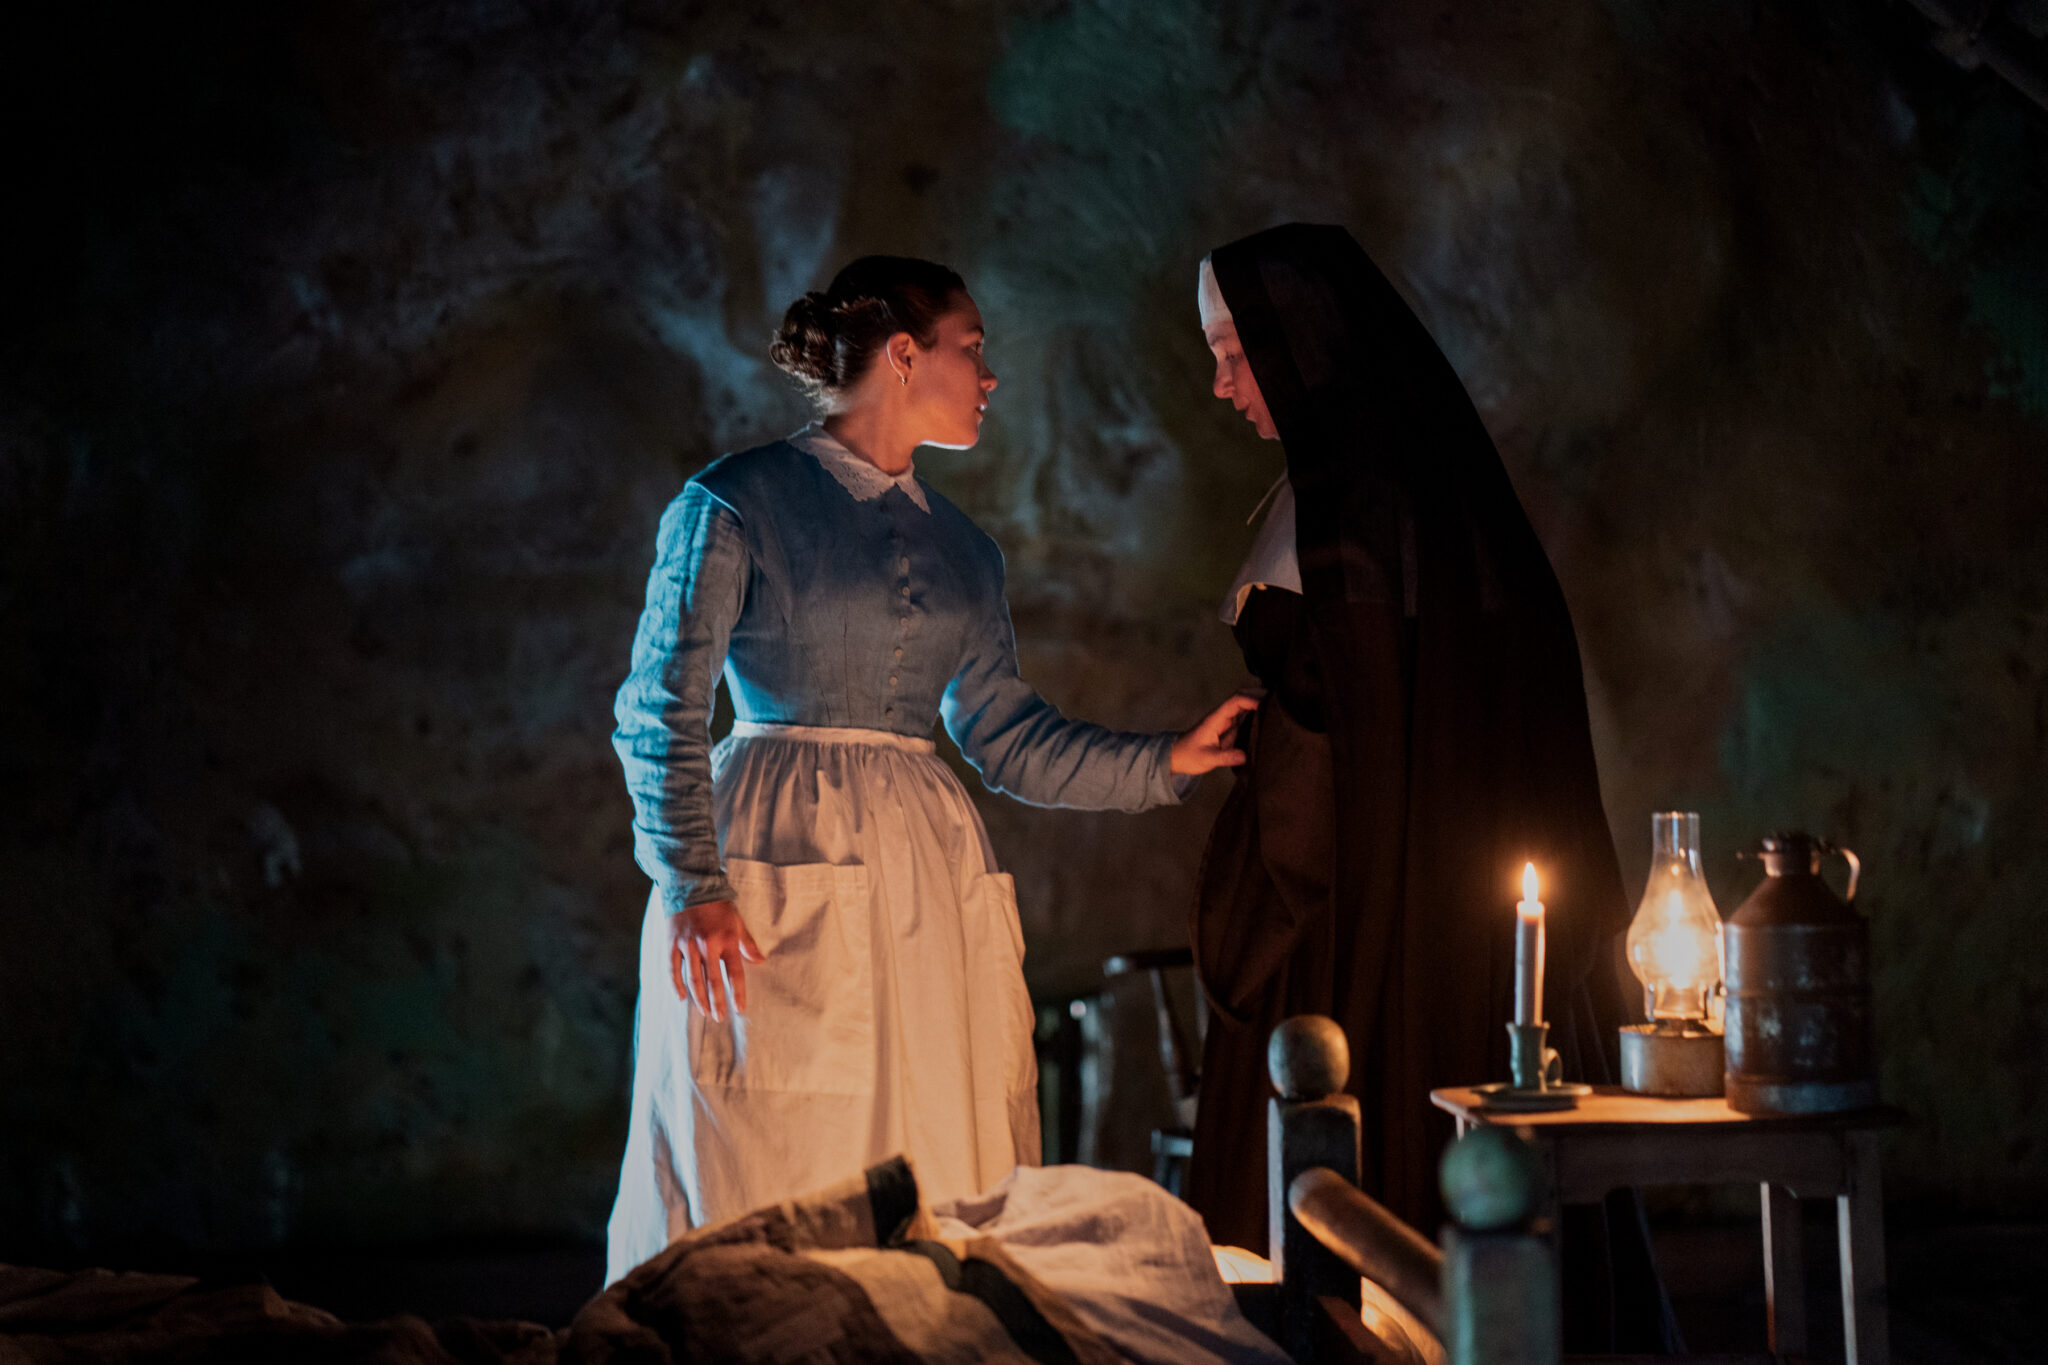 Florence Pugh in einem blauweißen Kleid neben einer Nonne in Schwarz in einer dunklen Kammer. Das Wunder